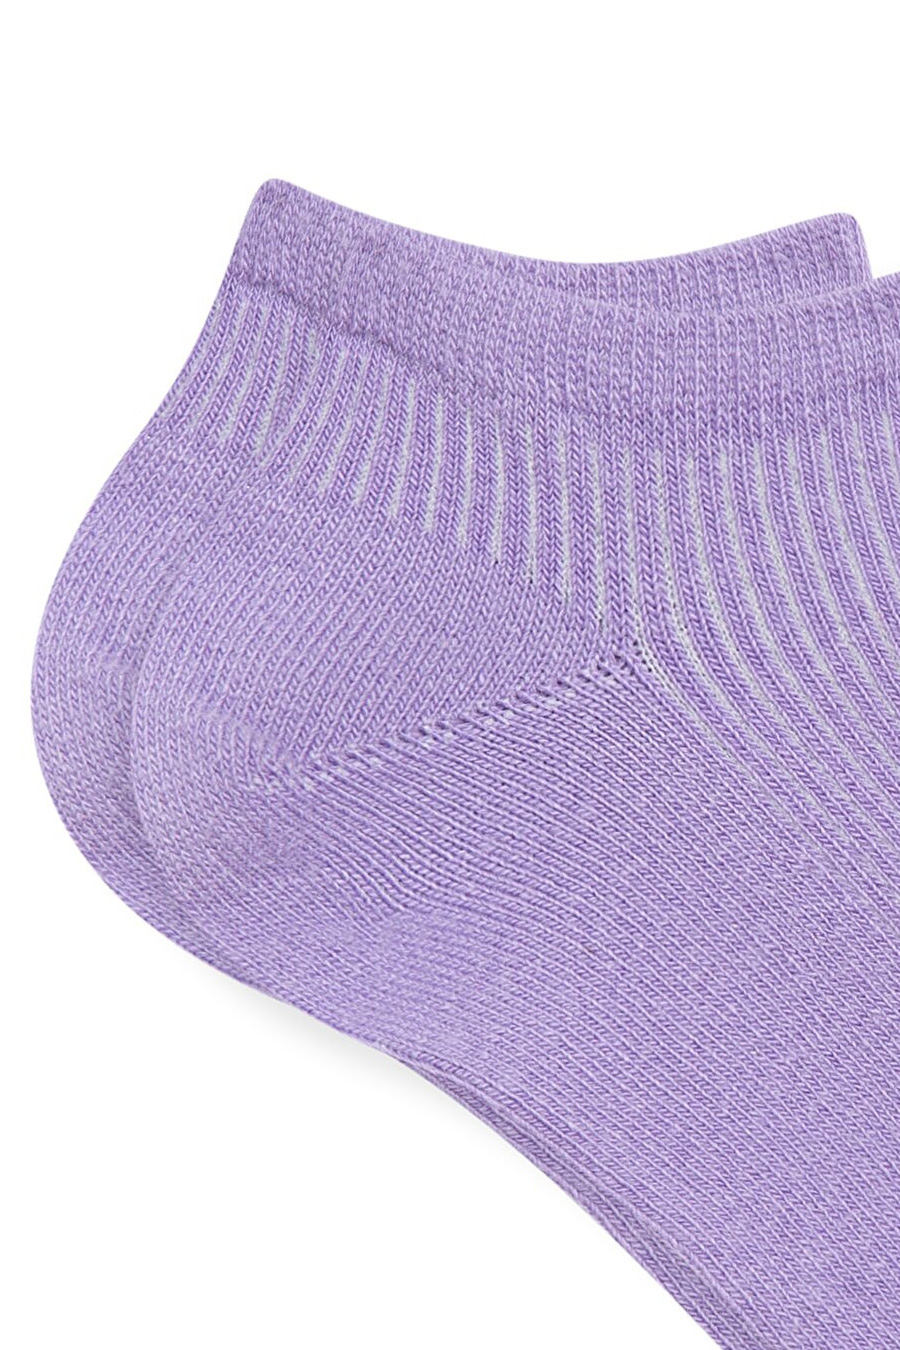 Socken MAVI 1910350-70542